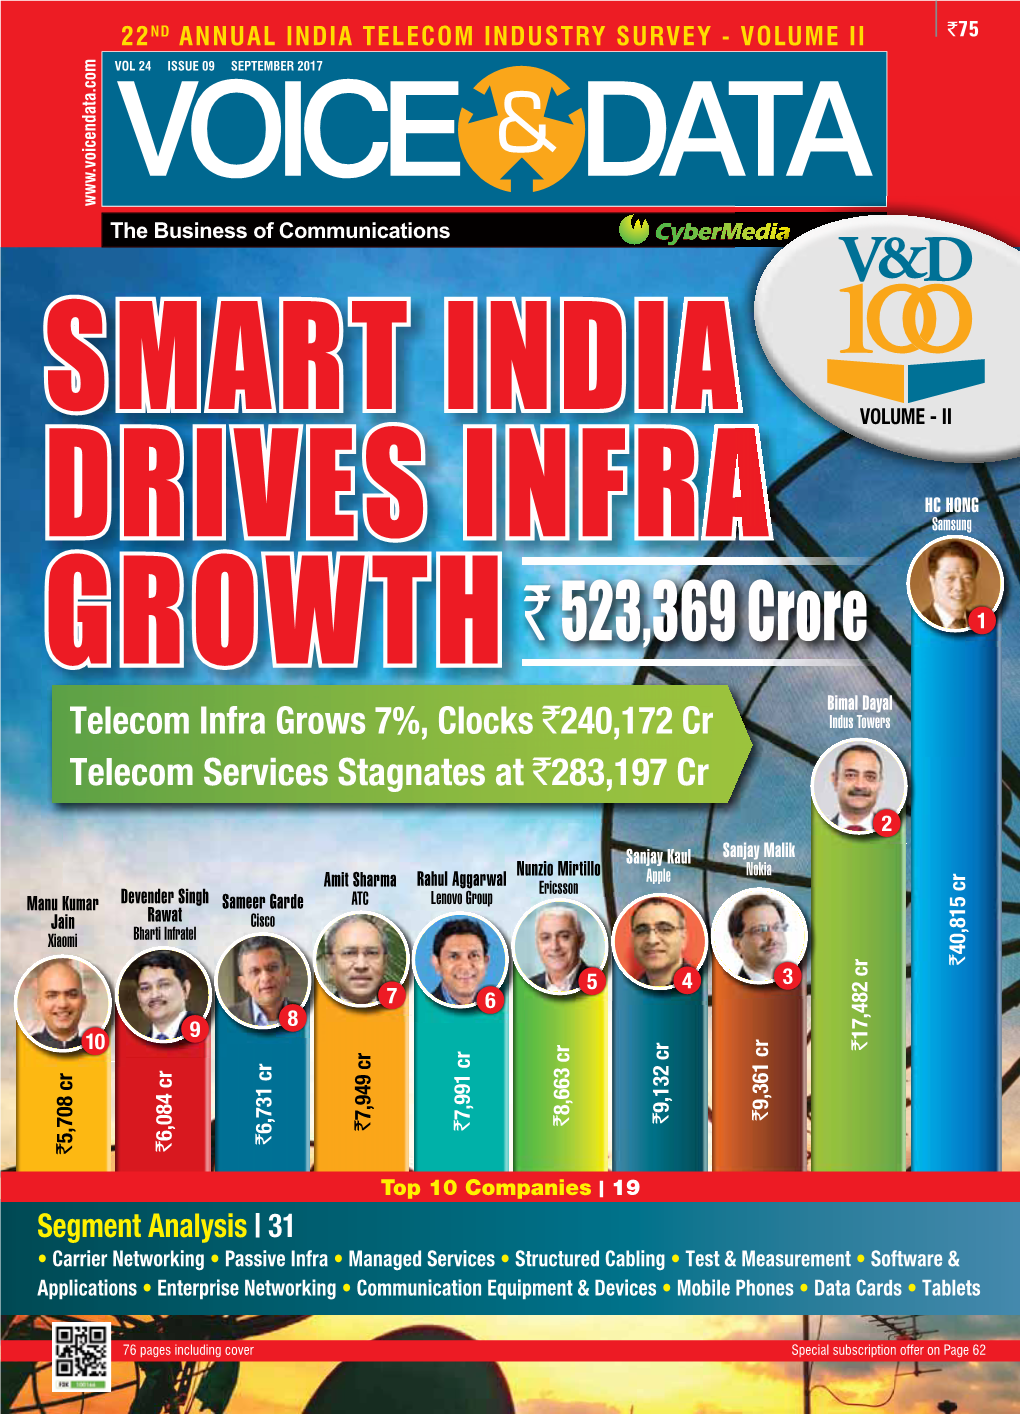 India Telecom Industry Survey